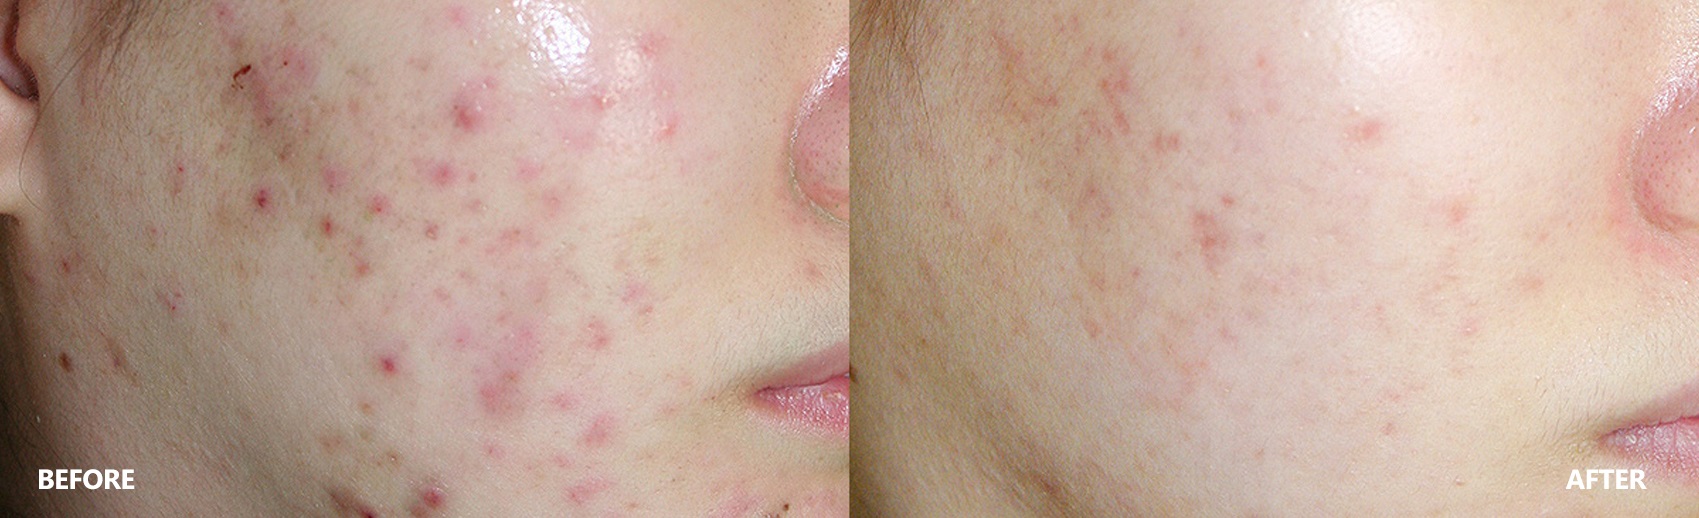 acne-result-banner-2.jpg